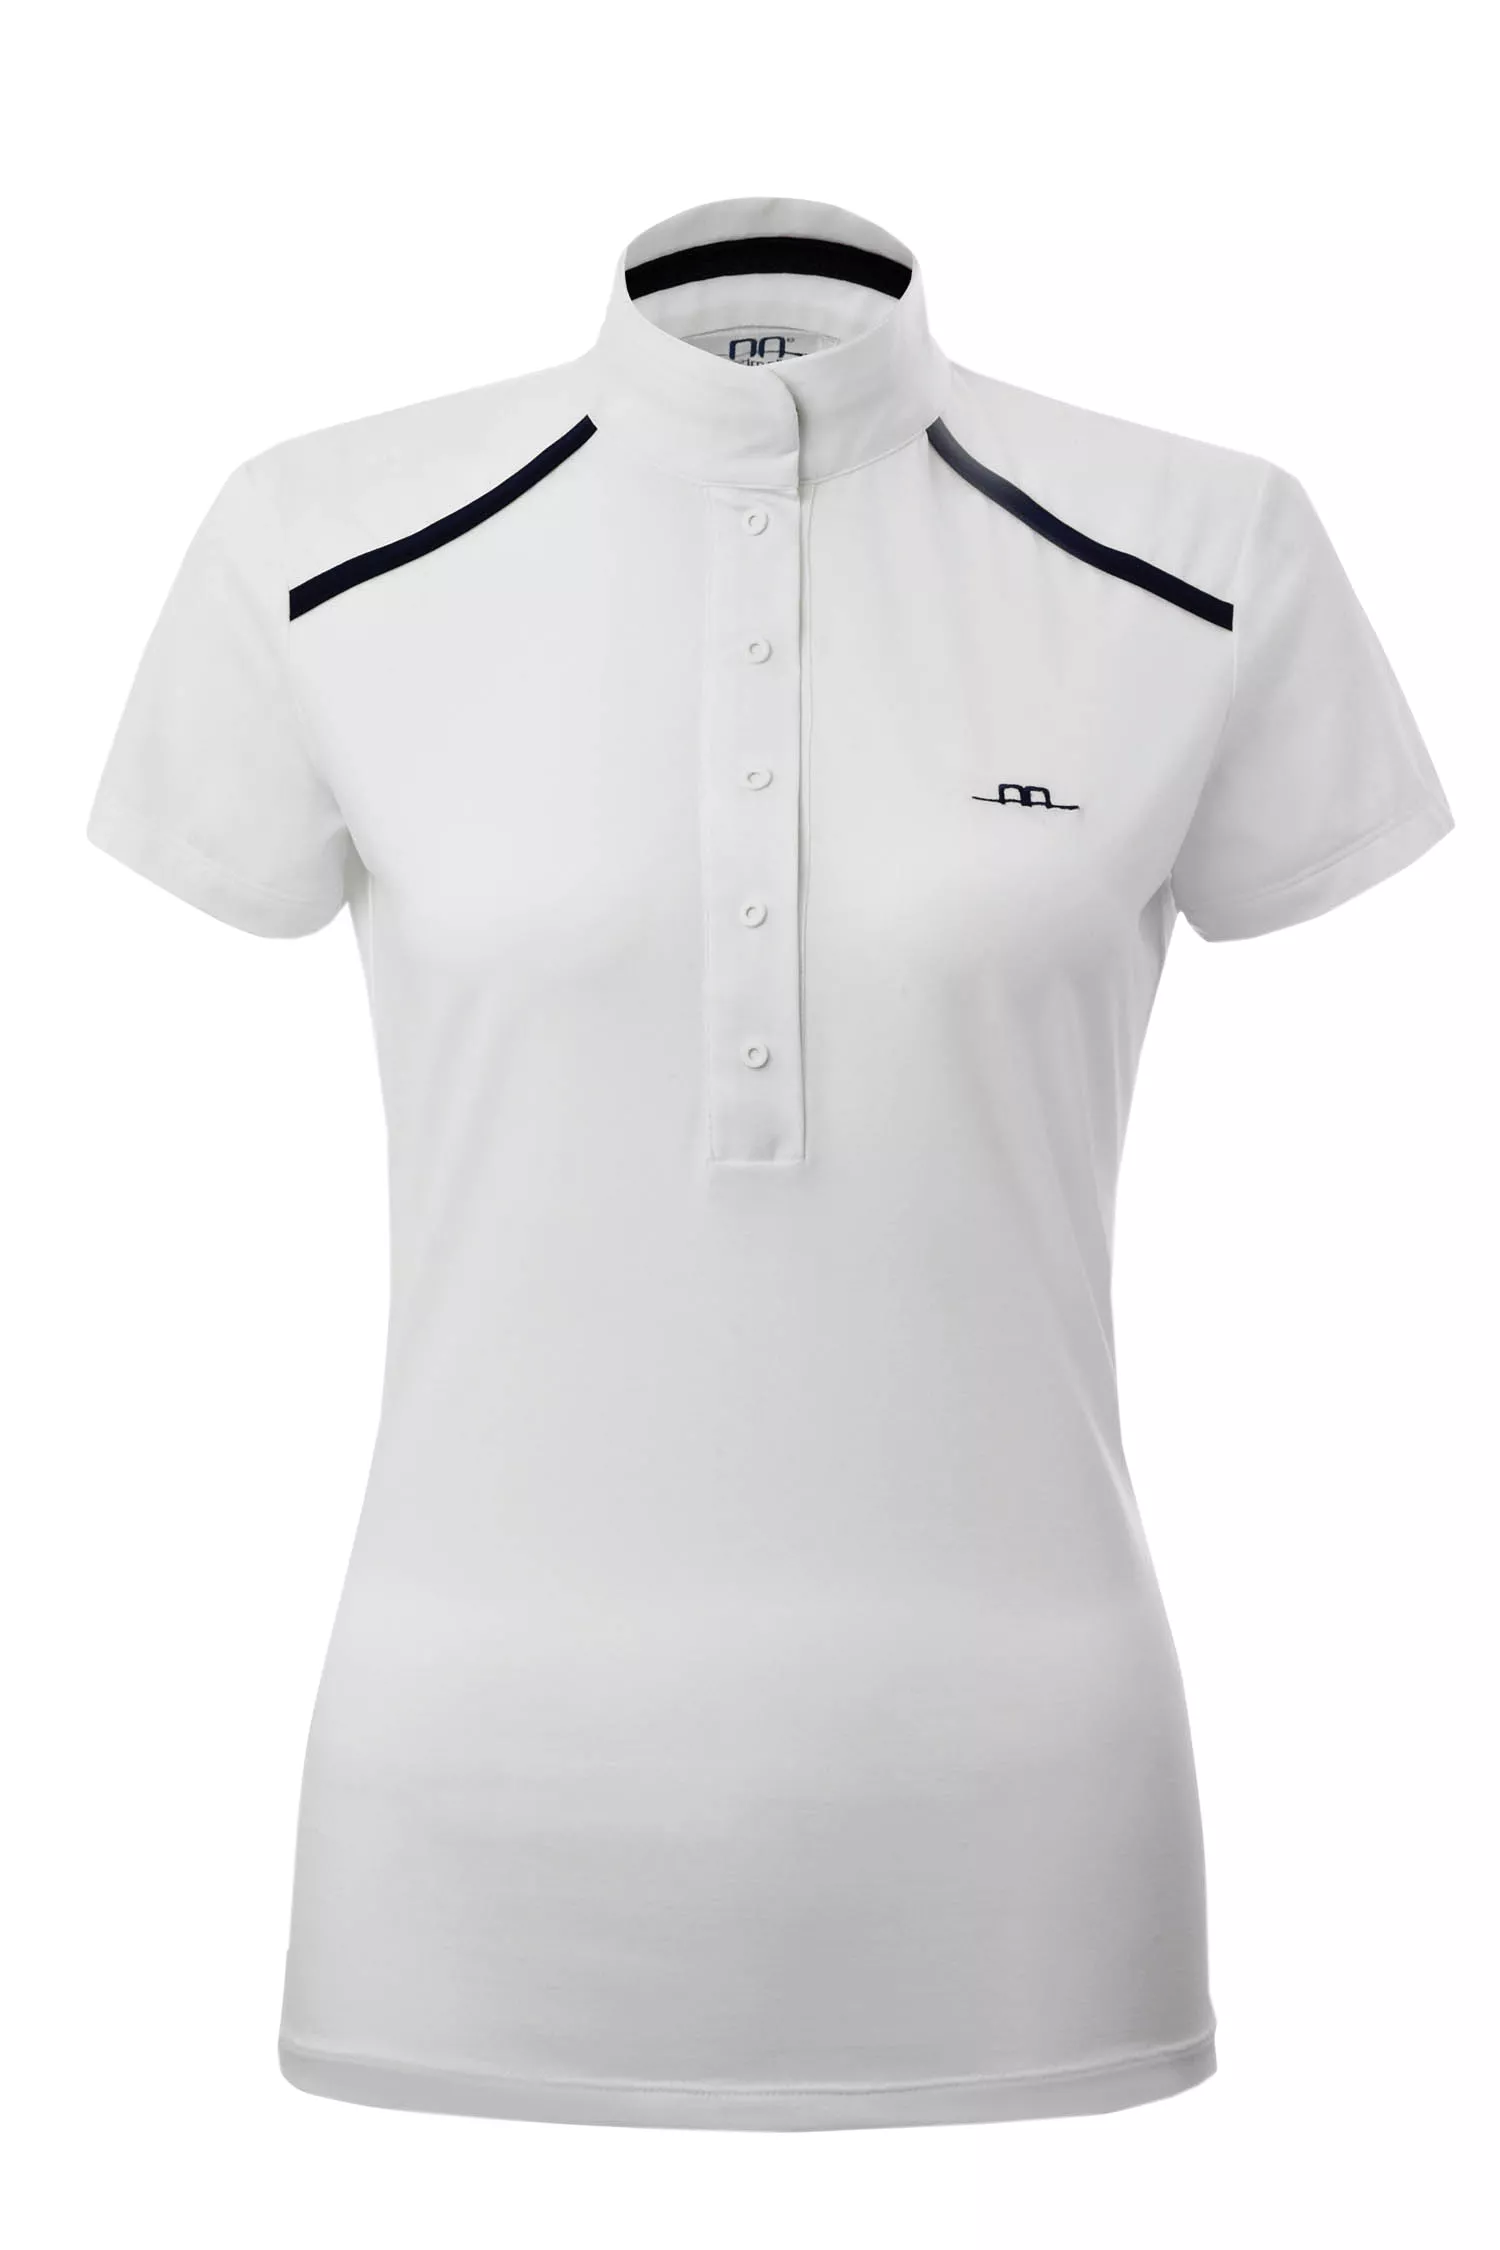 Albanese - Camiseta de competición para mujer "Rio", blanca/azul marino